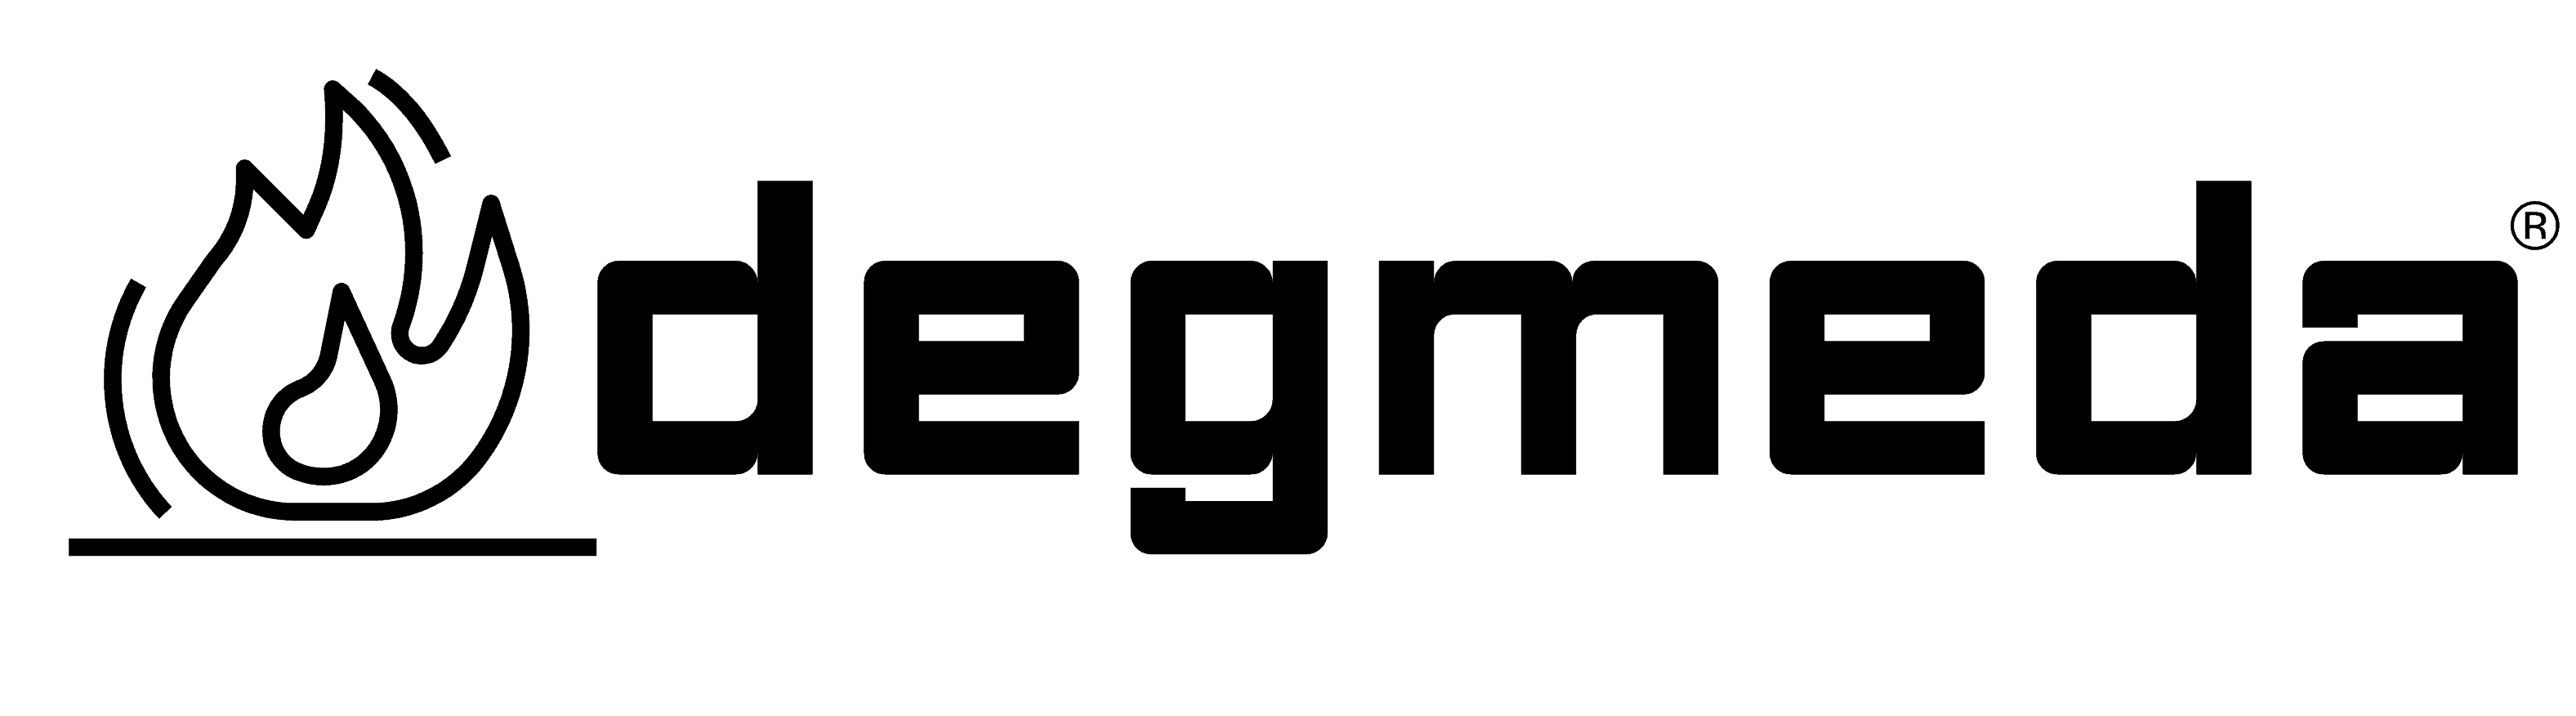 degmeda shou sugi ban logo